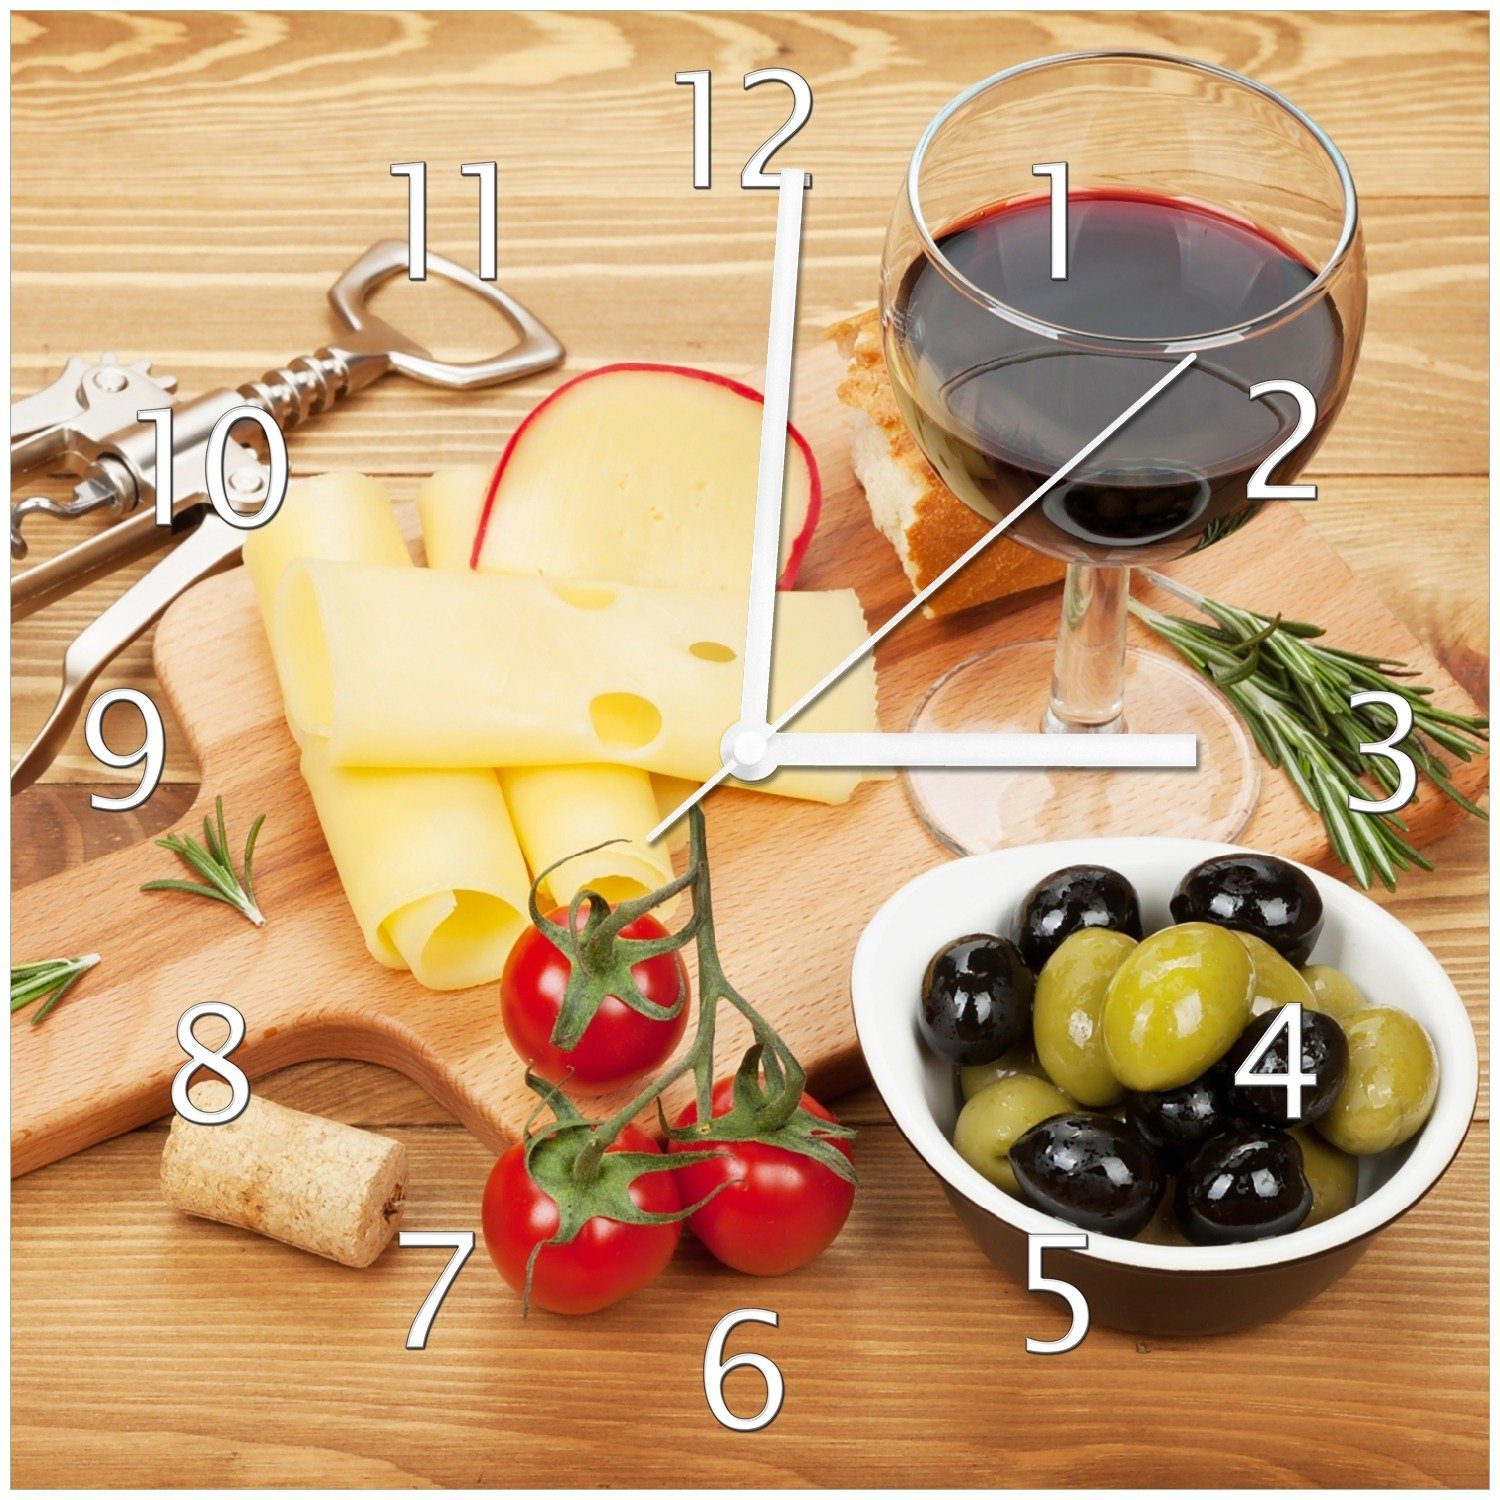 Käseplatte, Wanduhr Oliven (Glasuhr) und Rotwein, Tomaten Wallario - Abend Genuss am